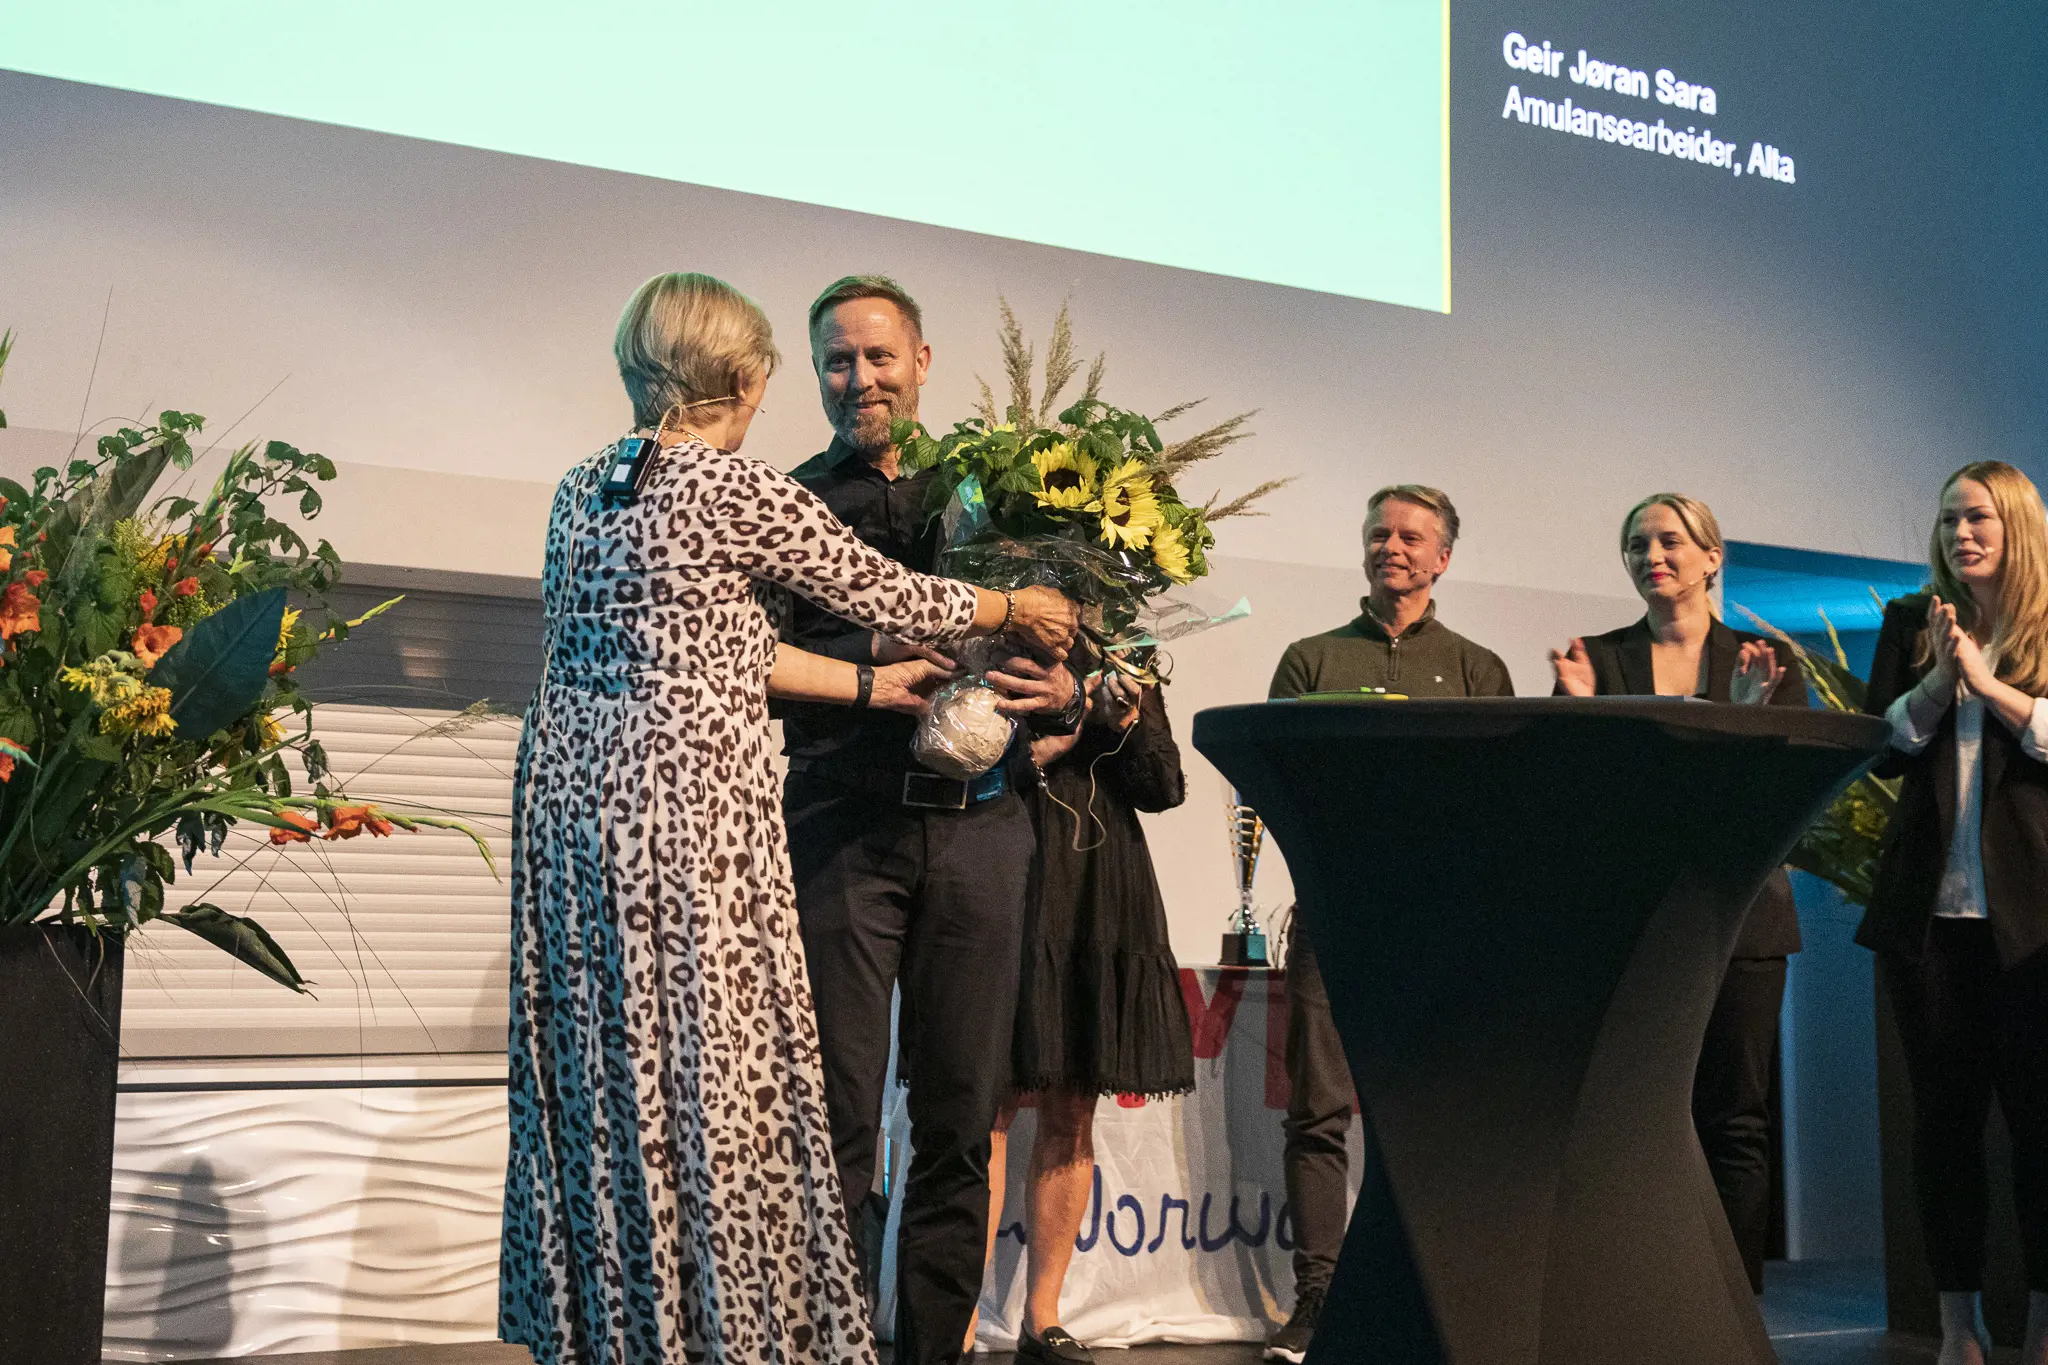 Geir Jøran mottar prisen på scenen under middagen.